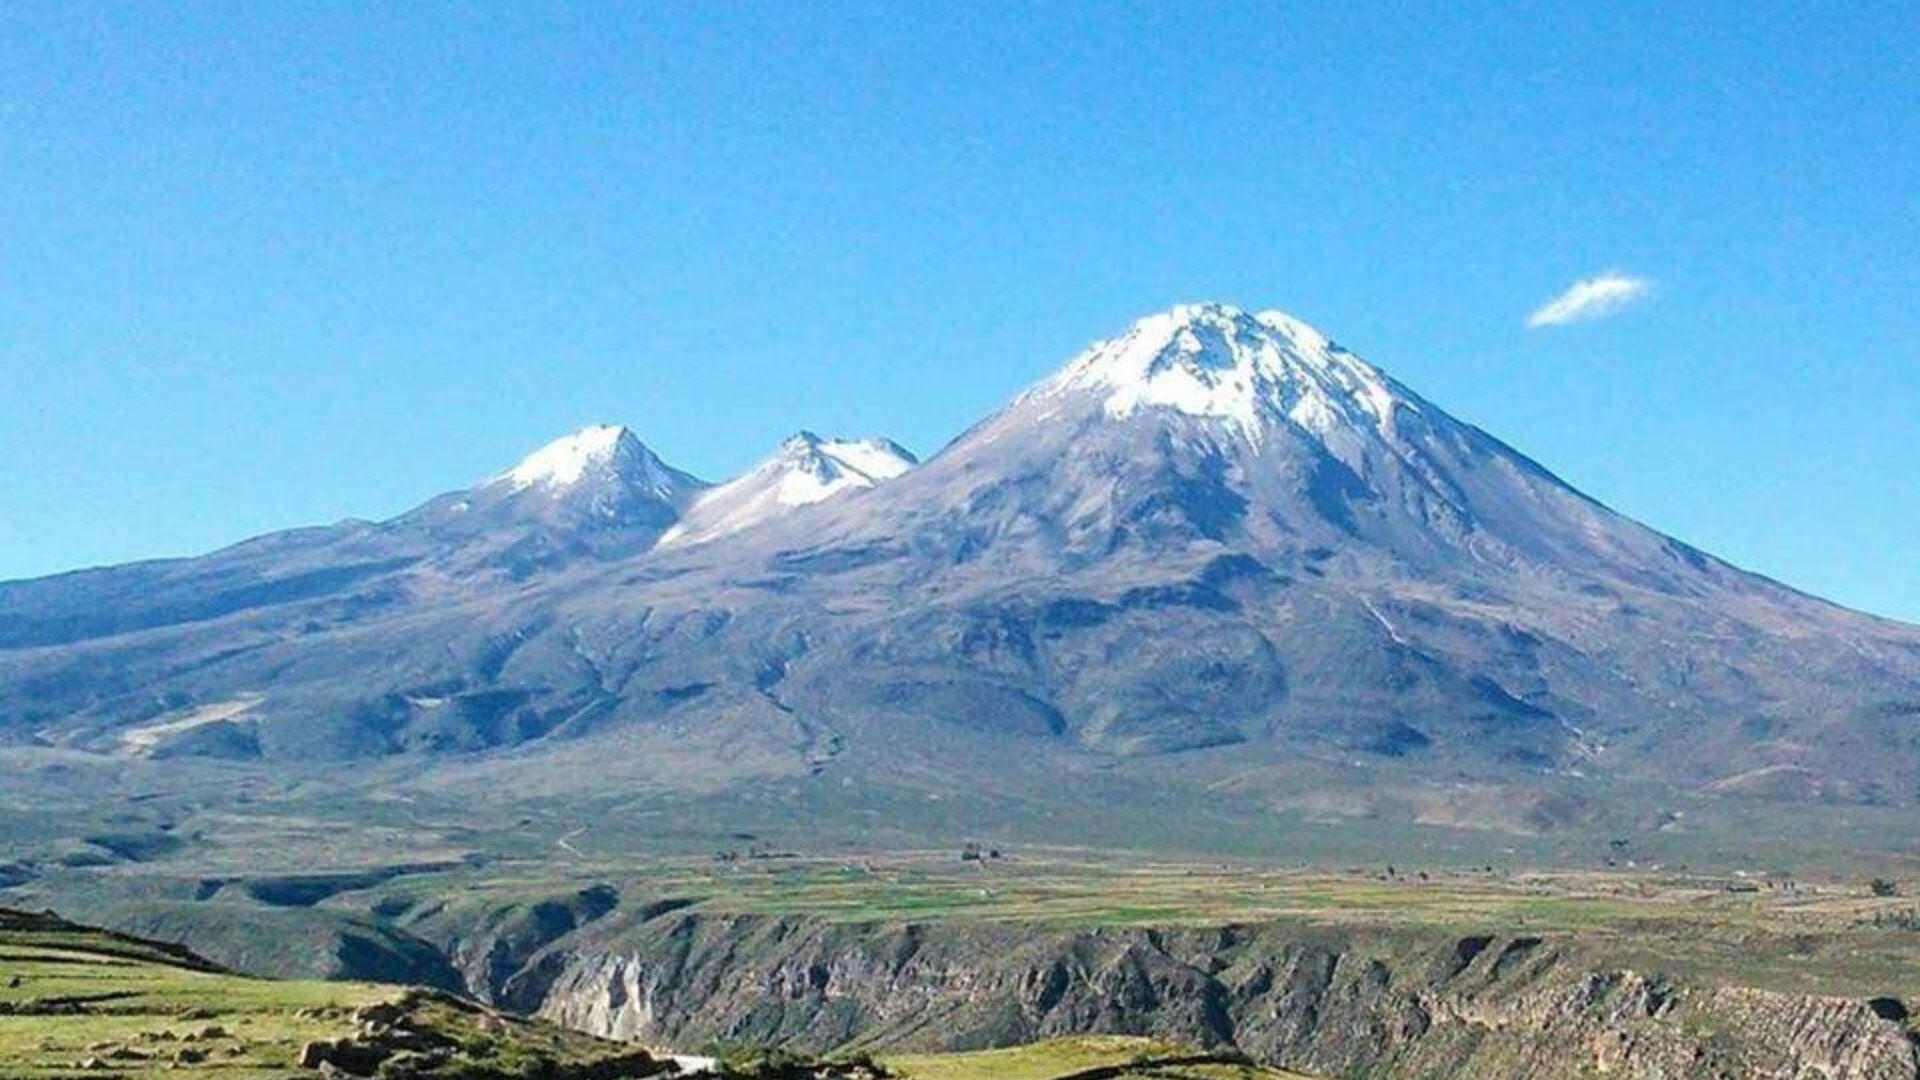 Menos conocido pero igualmente majestuoso, el volcán Yucamani en Tacna comparte características sorprendentes con el Misti. Atrévete a conocer más sobre este impresionante fenómeno natural.
Foto: Ministerio del Comercio Exterior y Turismo